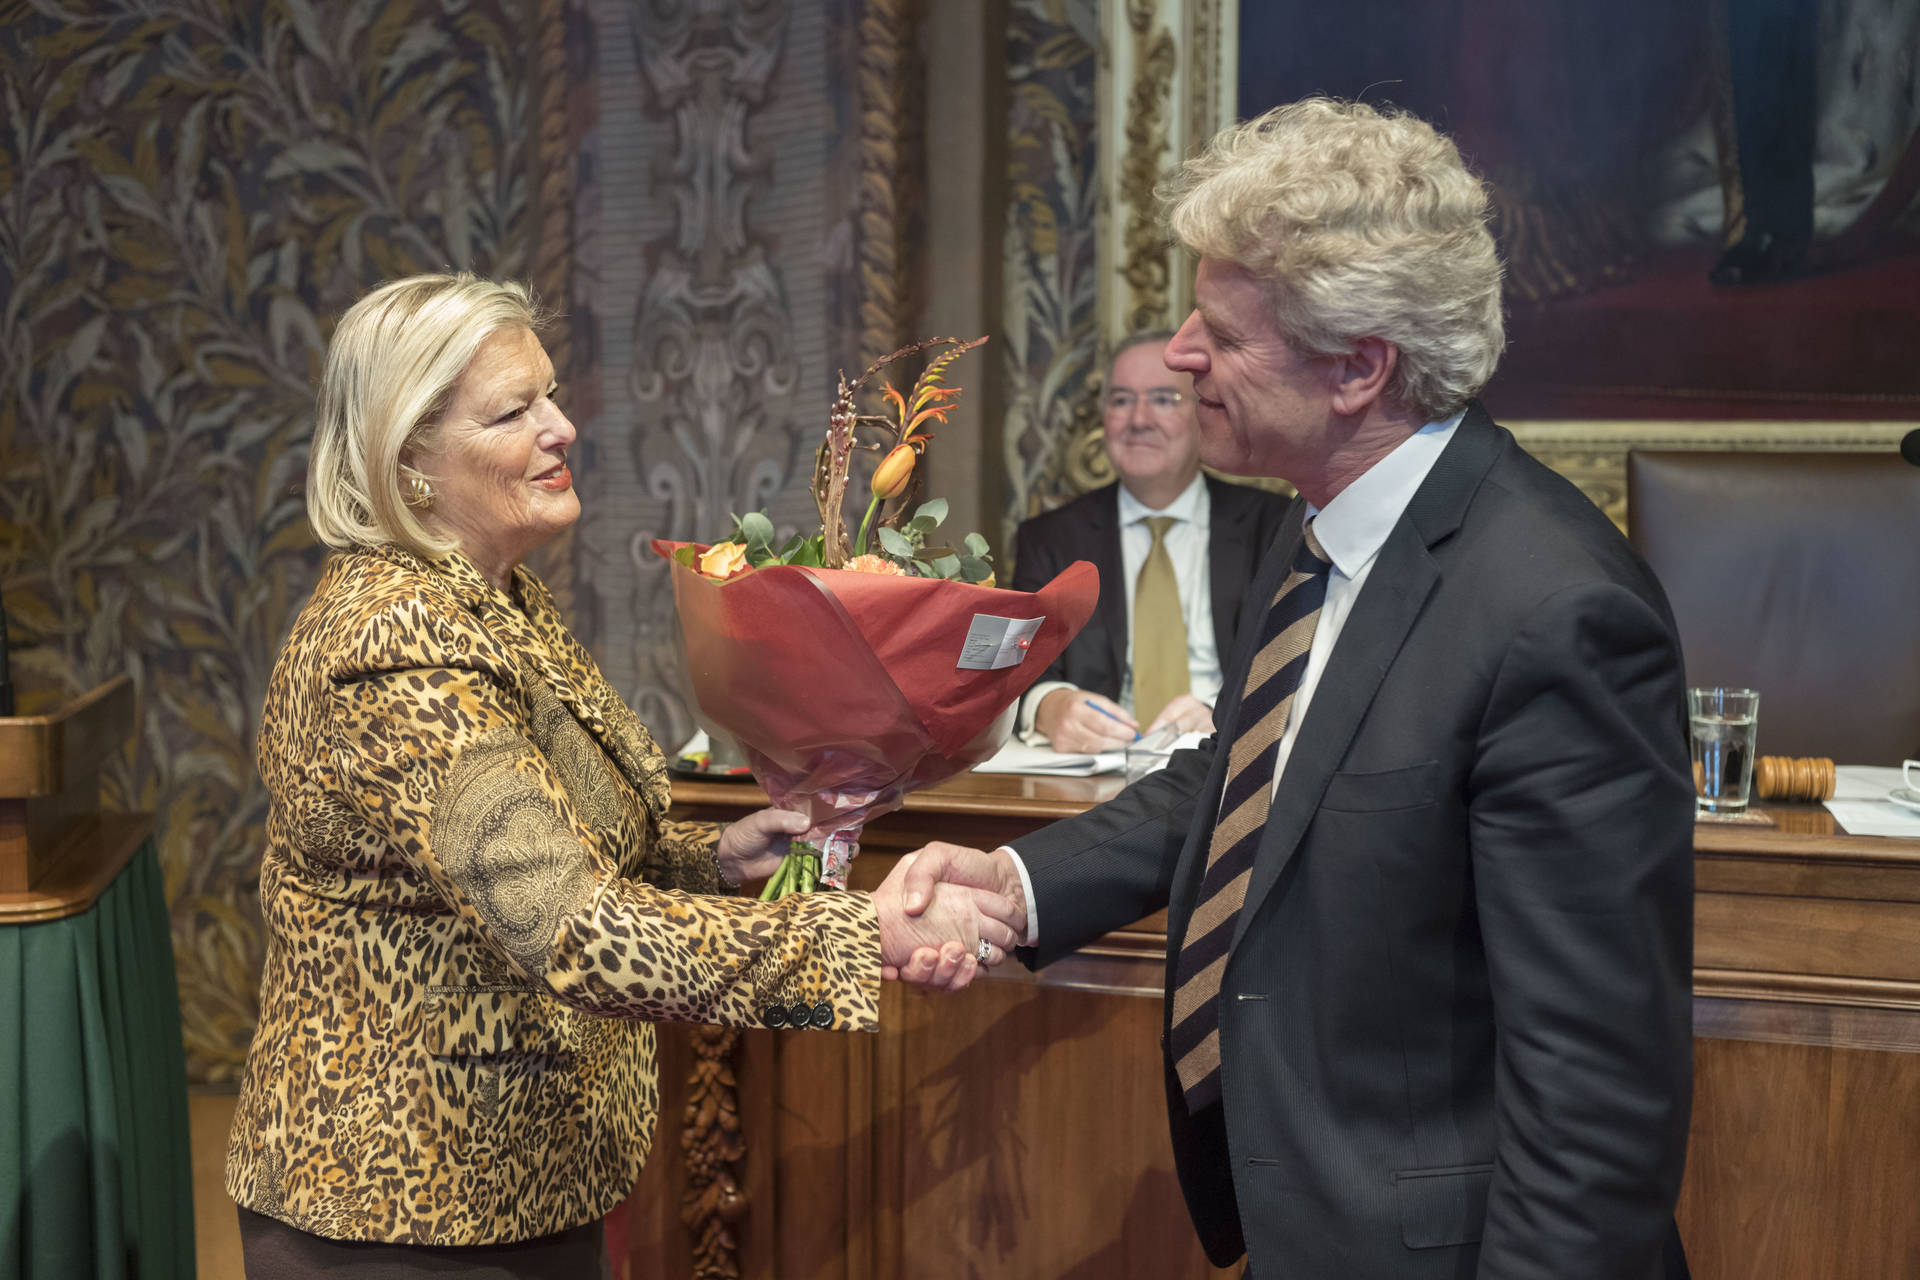 Voorzitter Broekers-Knol feliciteert senator Van Kesteren (PVV) met zijn maidenspeech.